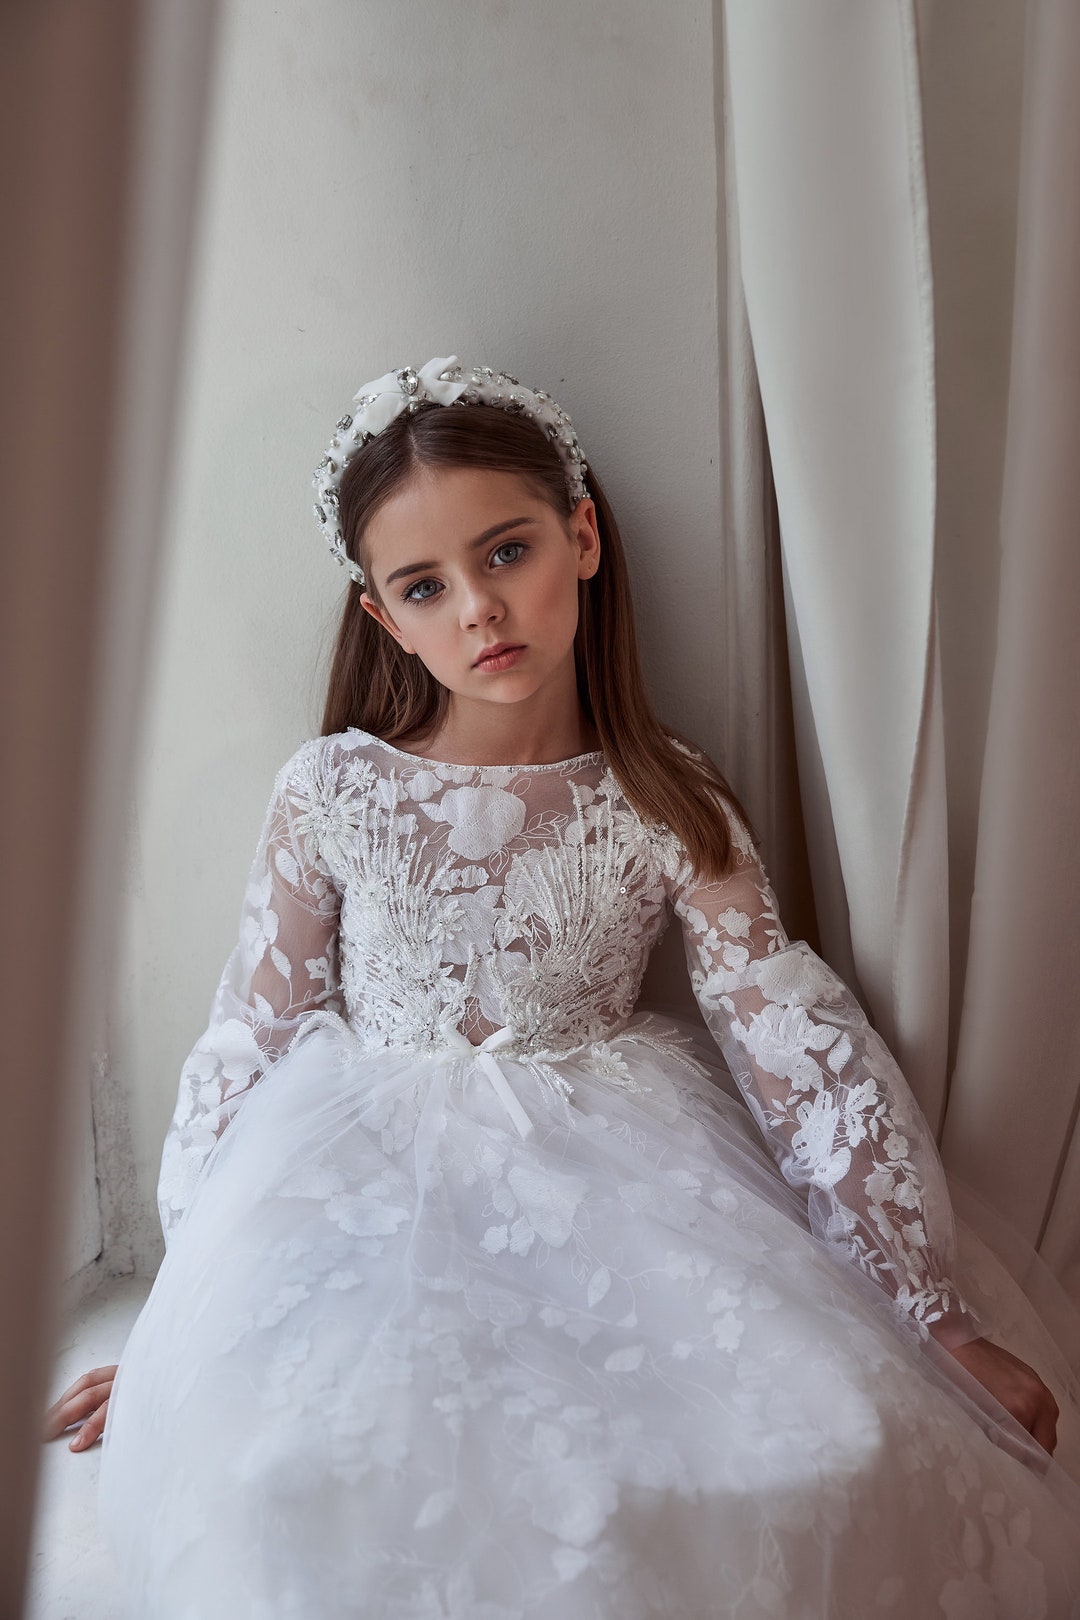 Wedding Dresses, Bridal Gowns, & More | Allure Bridals